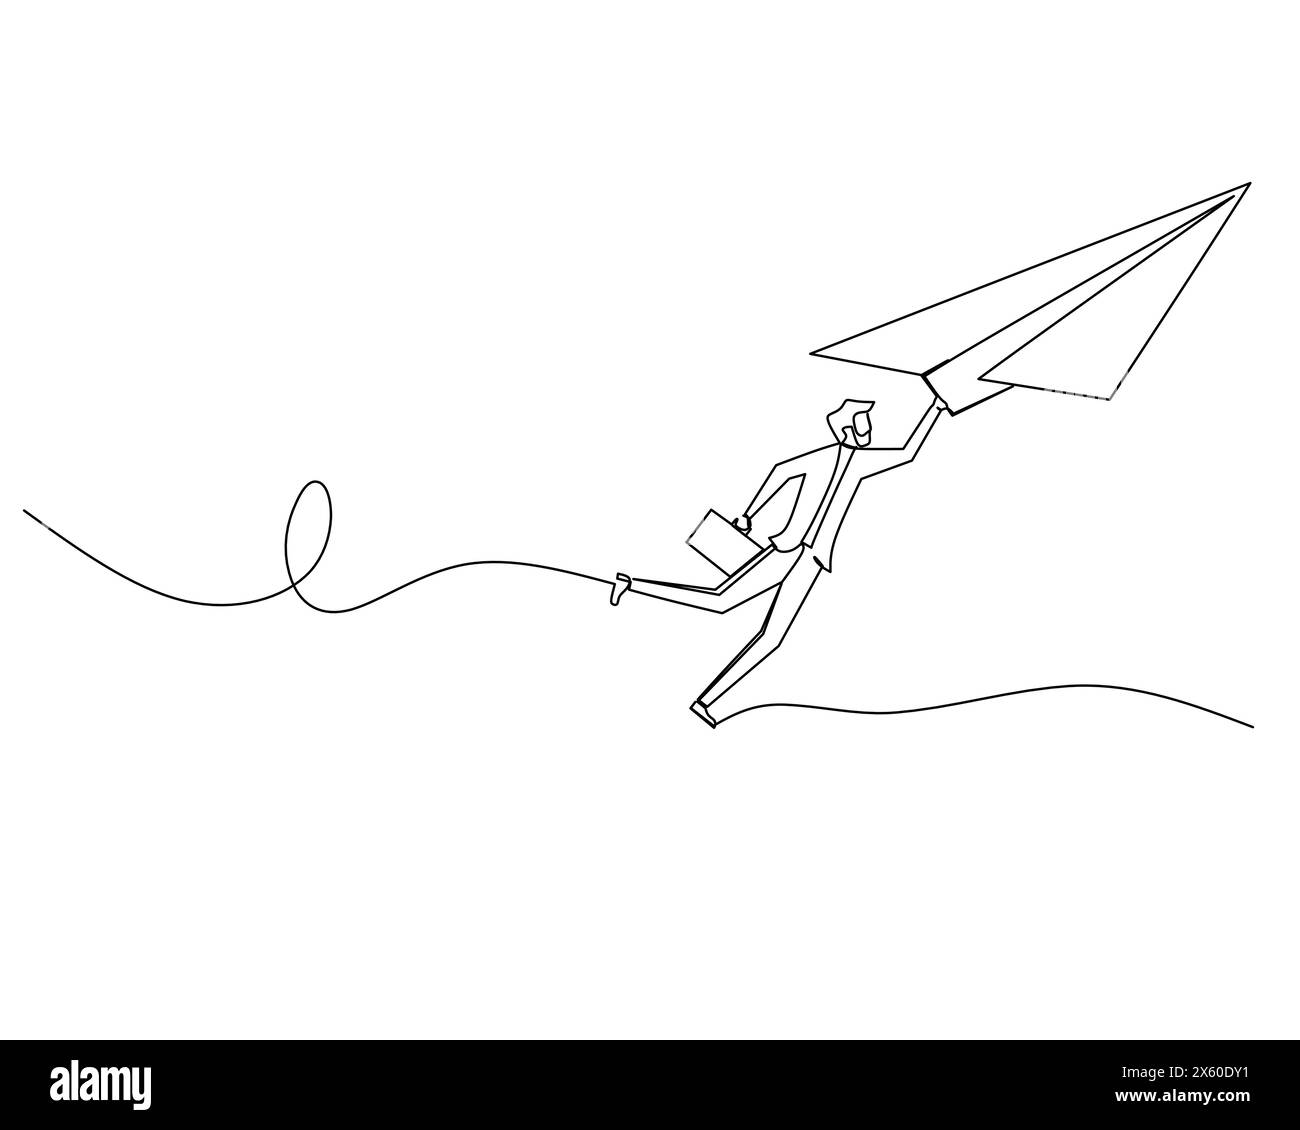 Un solo disegno continuo di un uomo d'affari volante che si aggrappa su un aereo di carta. Concetto di strategia di crescita aziendale. Illustrazione vettoriale del progetto Illustrazione Vettoriale